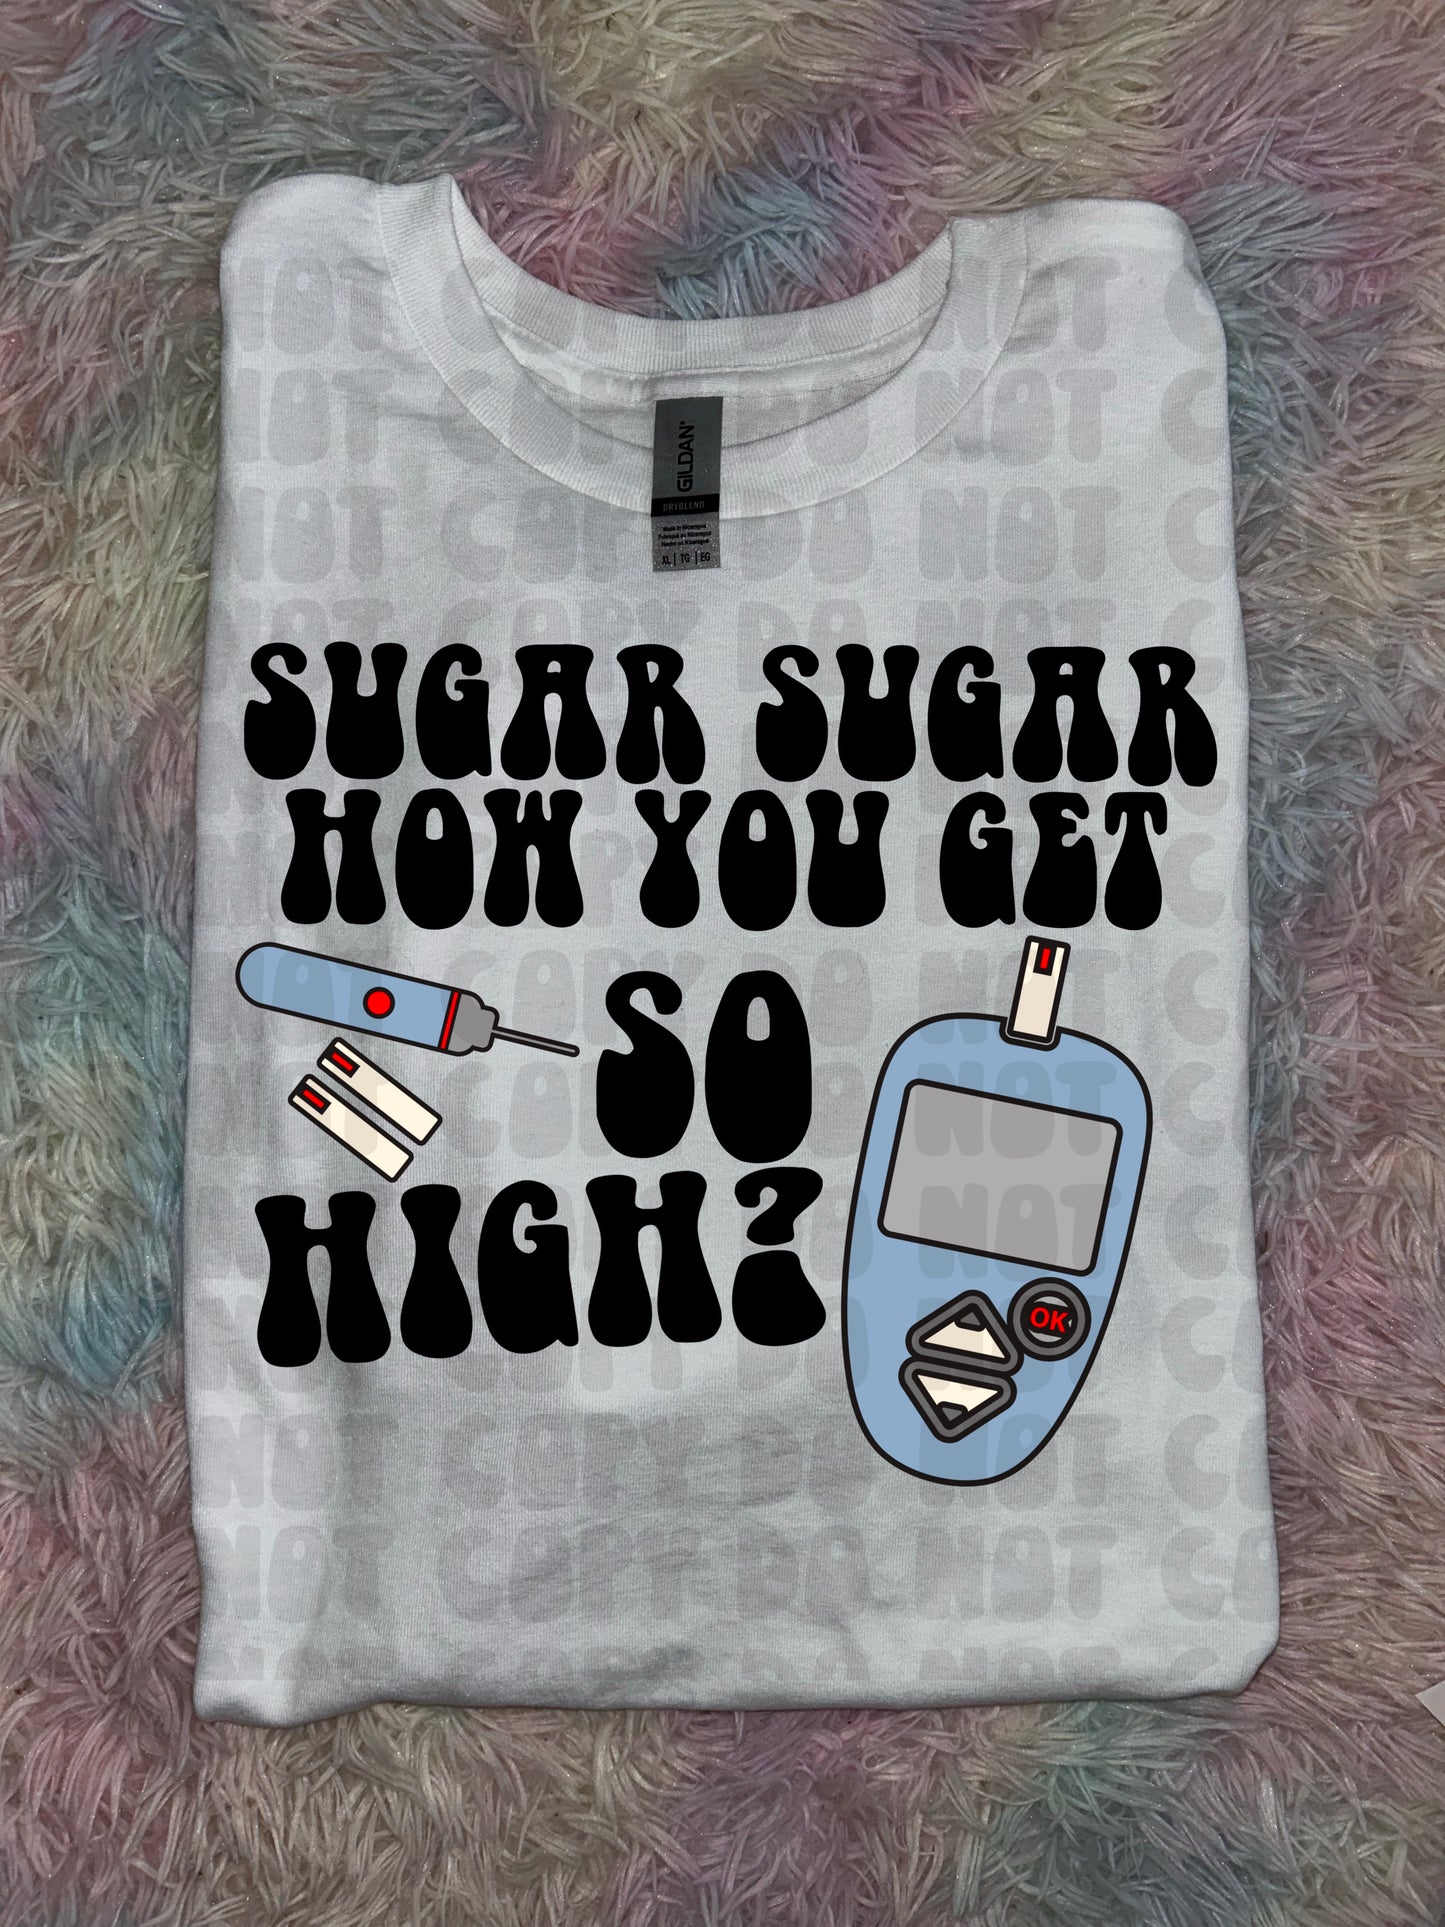 Sugar Sugar DIABETES PREORDER